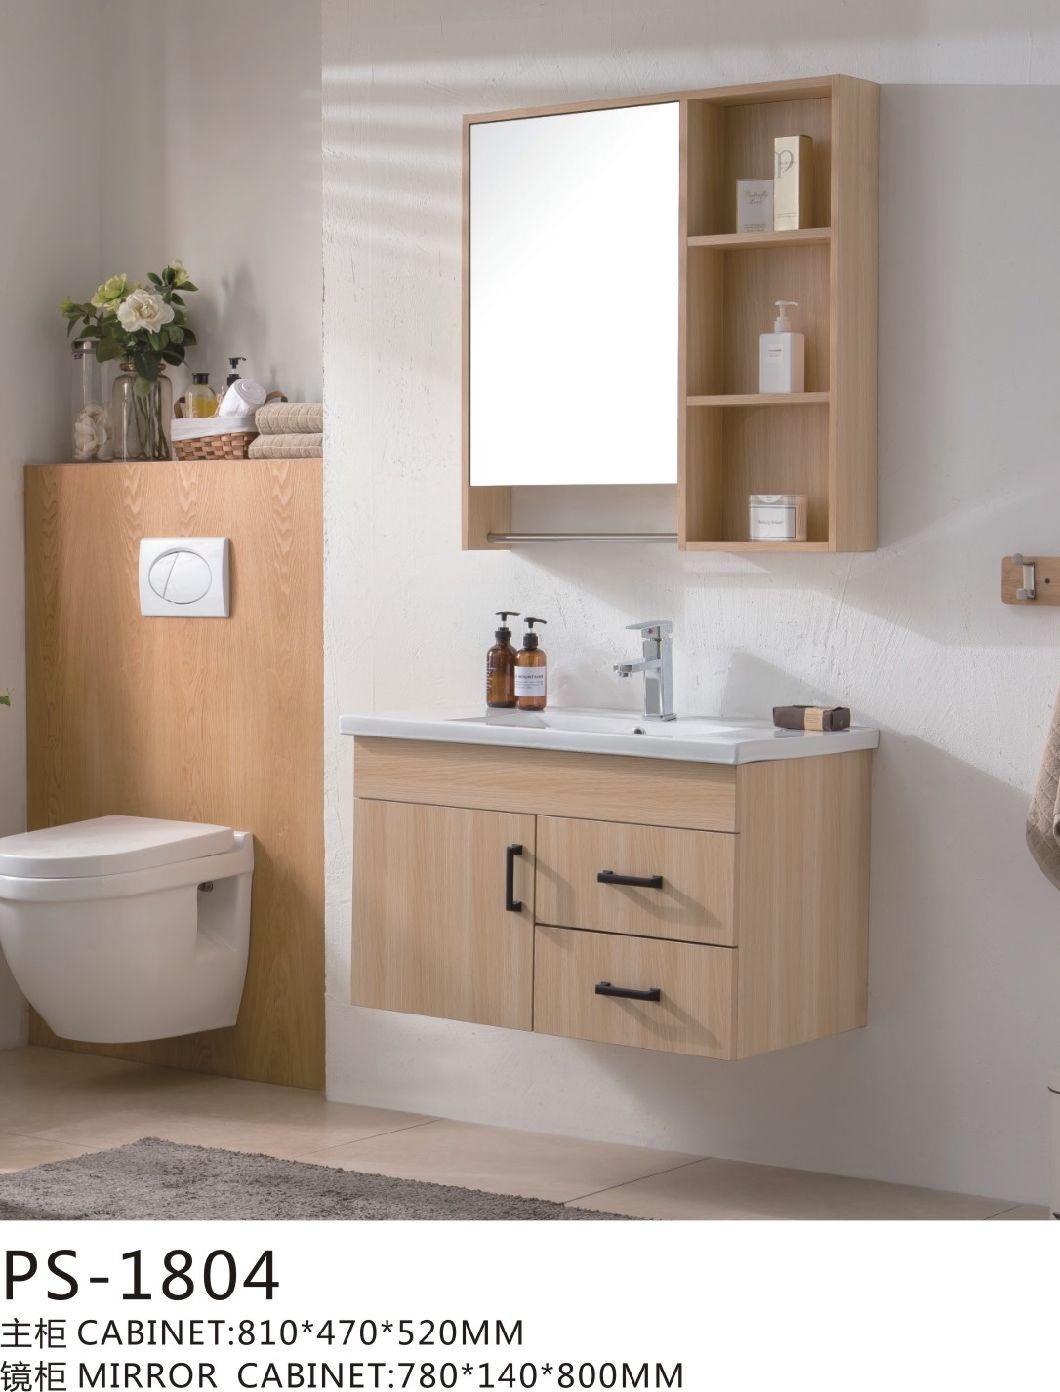 Large Popular Modern Solid Wood Bathroom Vanity